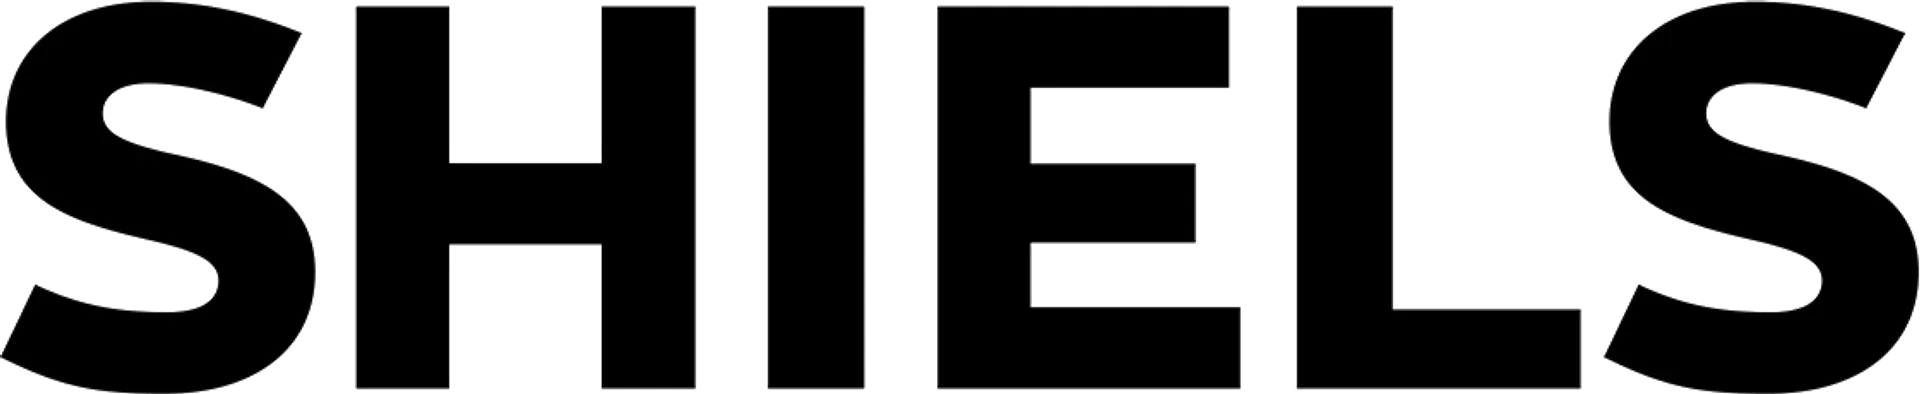 SHIELS logo of current catalogue